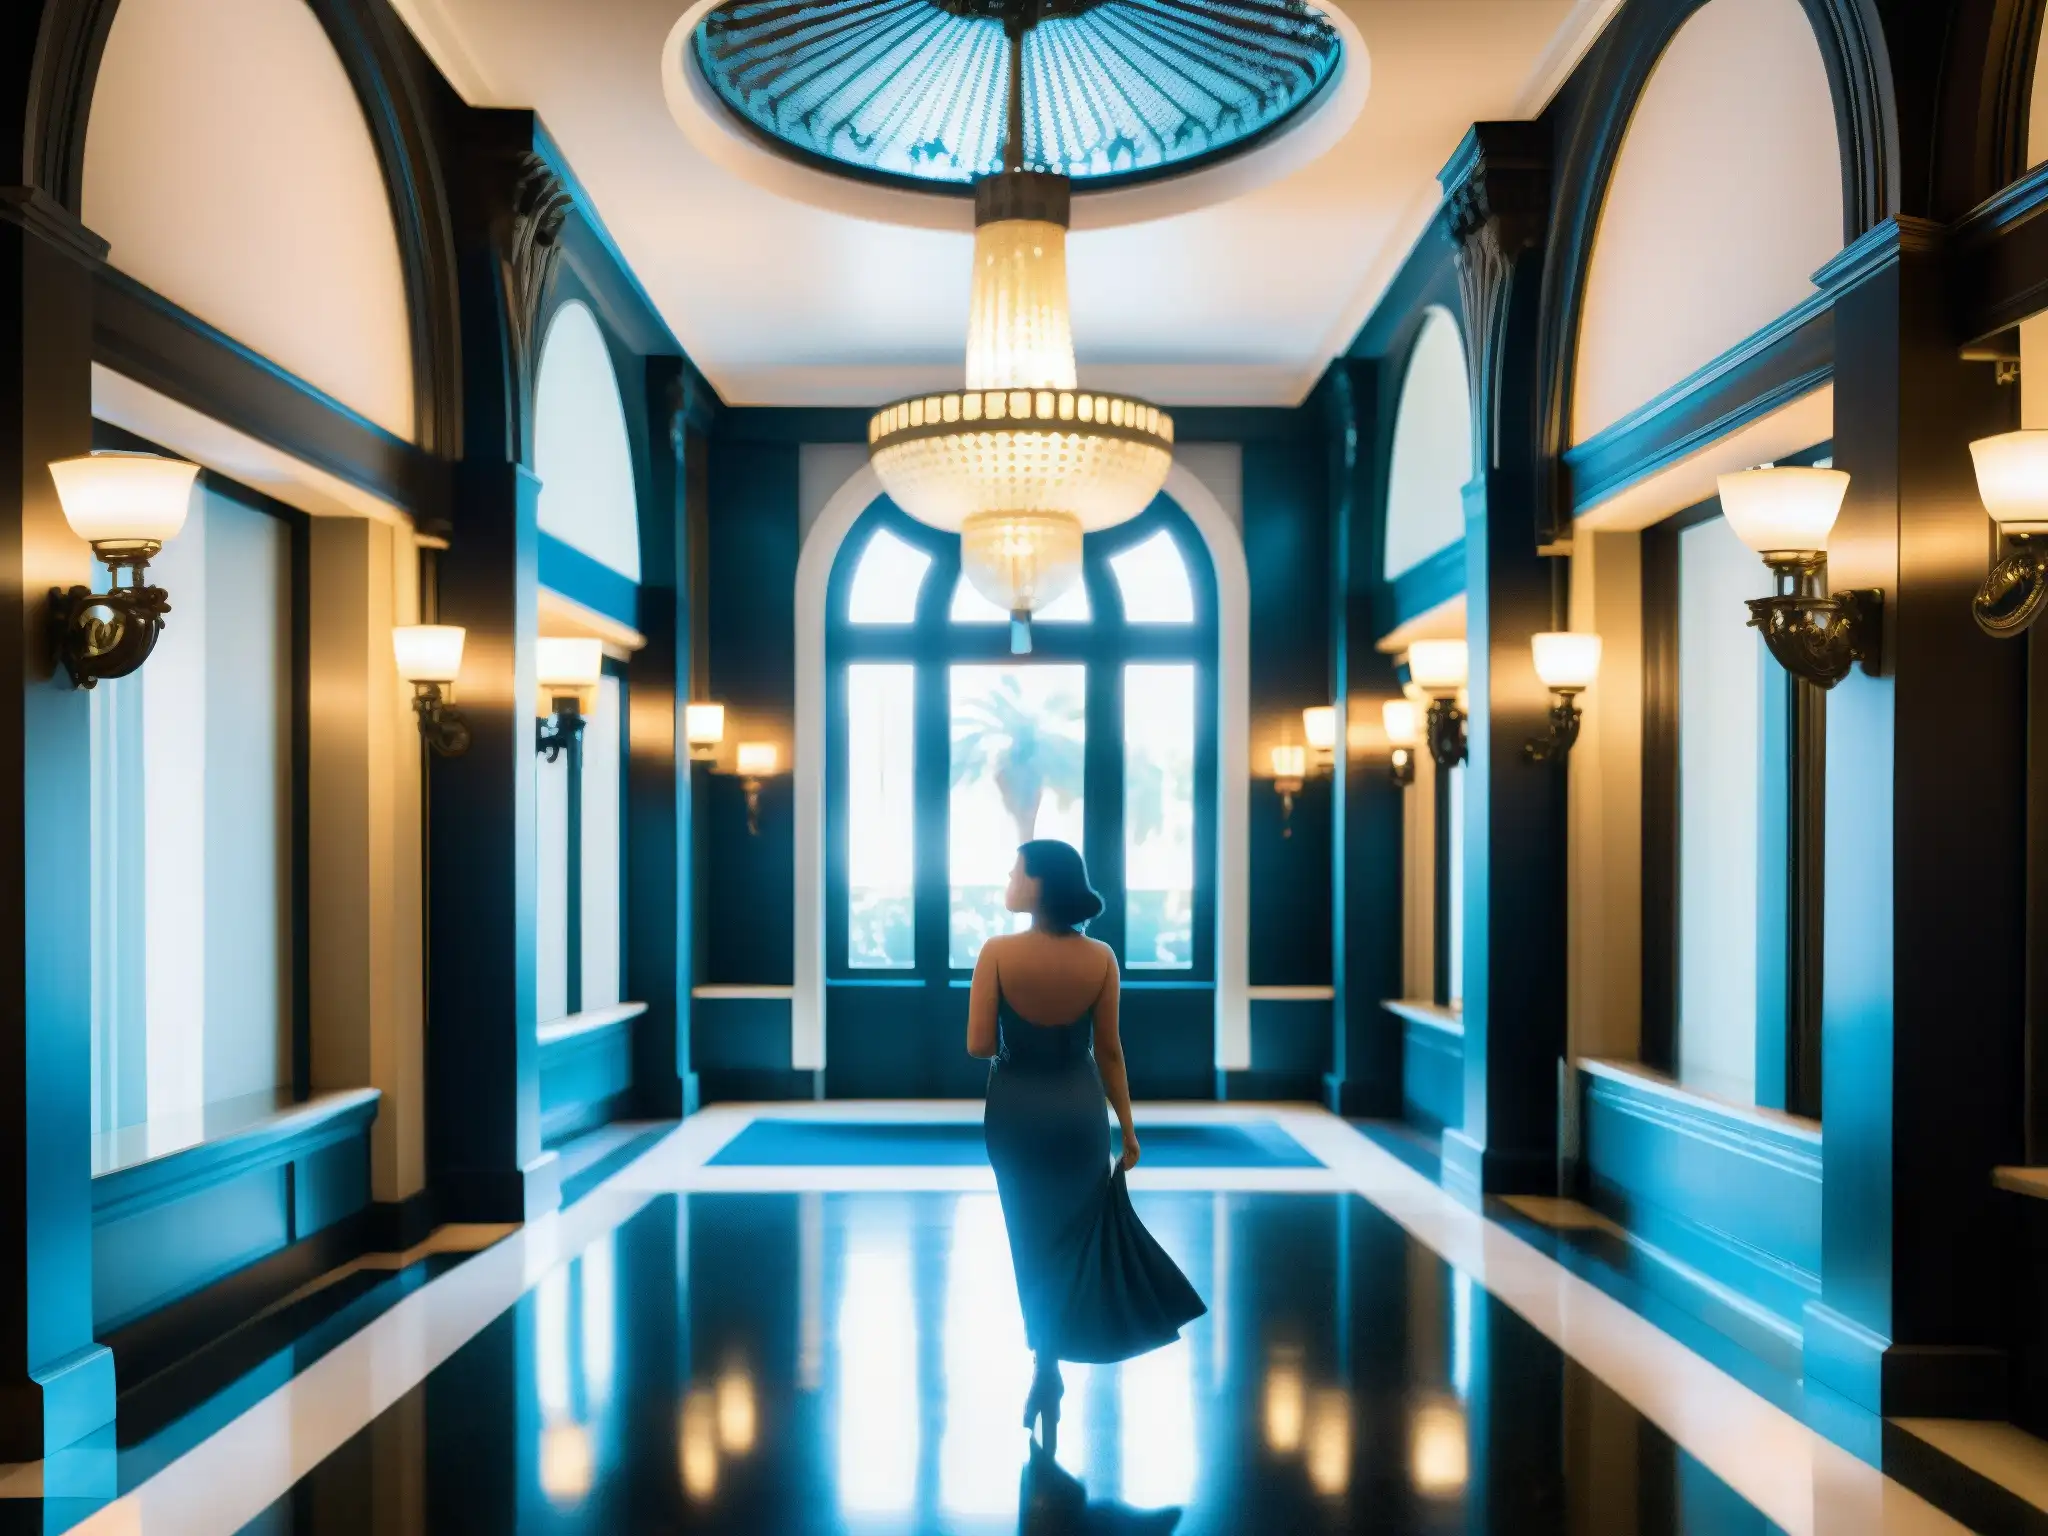 Una misteriosa dama de azul en el elegante Hotel Hollywood Roosevelt, evocando un aura de misterio y elegancia atemporal